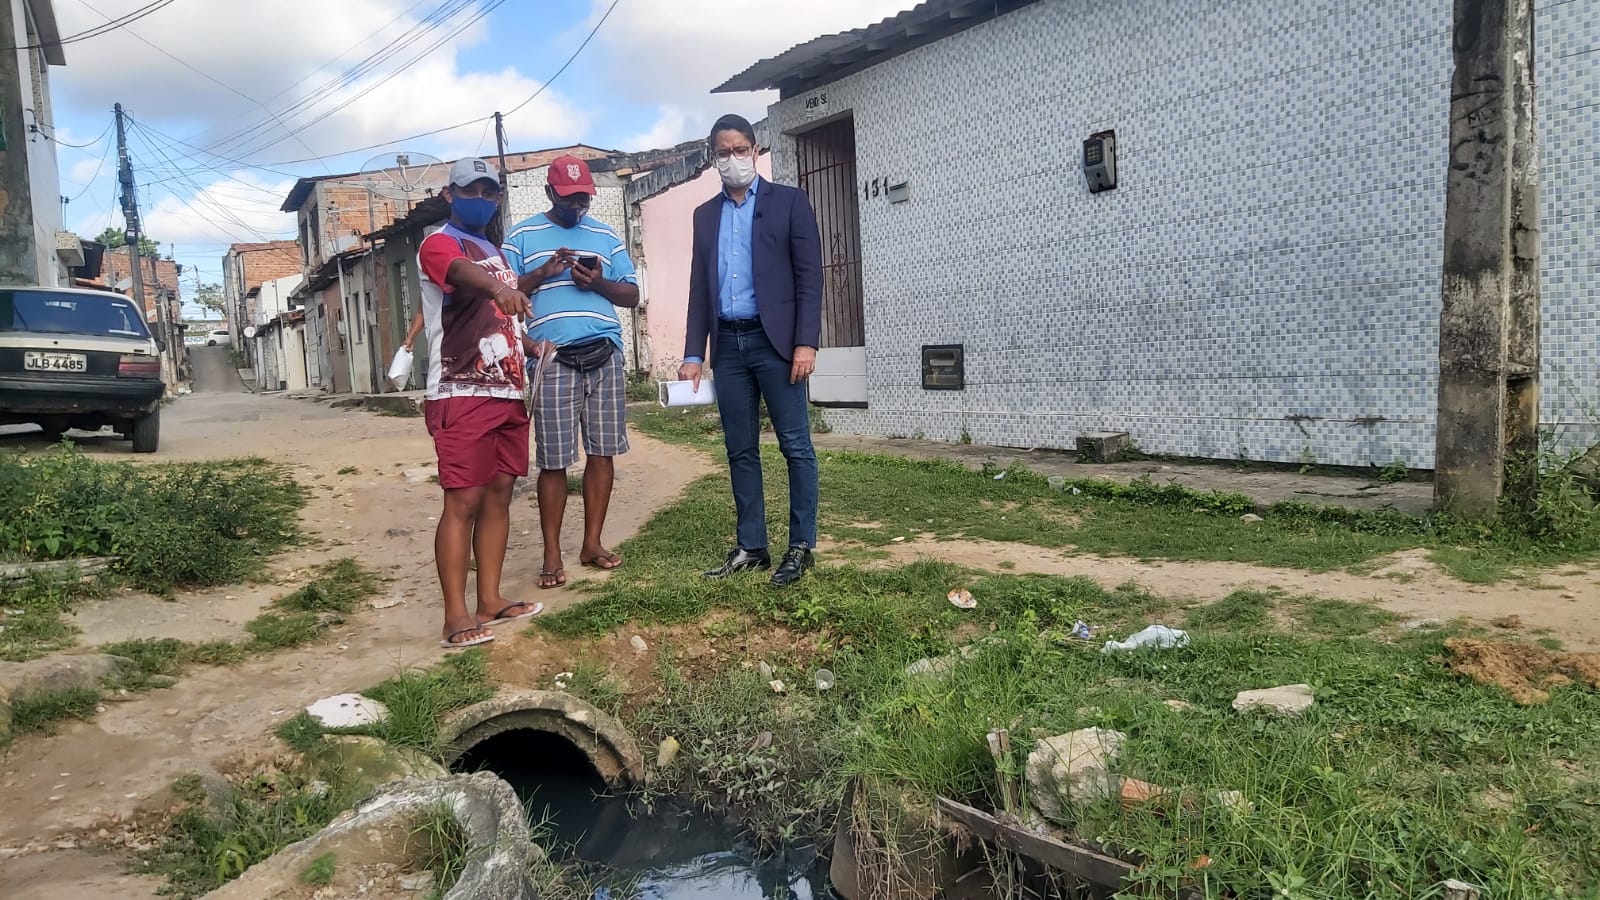 Ricardo Marques visita comunidade carente do Lamarão e cobra melhorias da Prefeitura de Aracaju